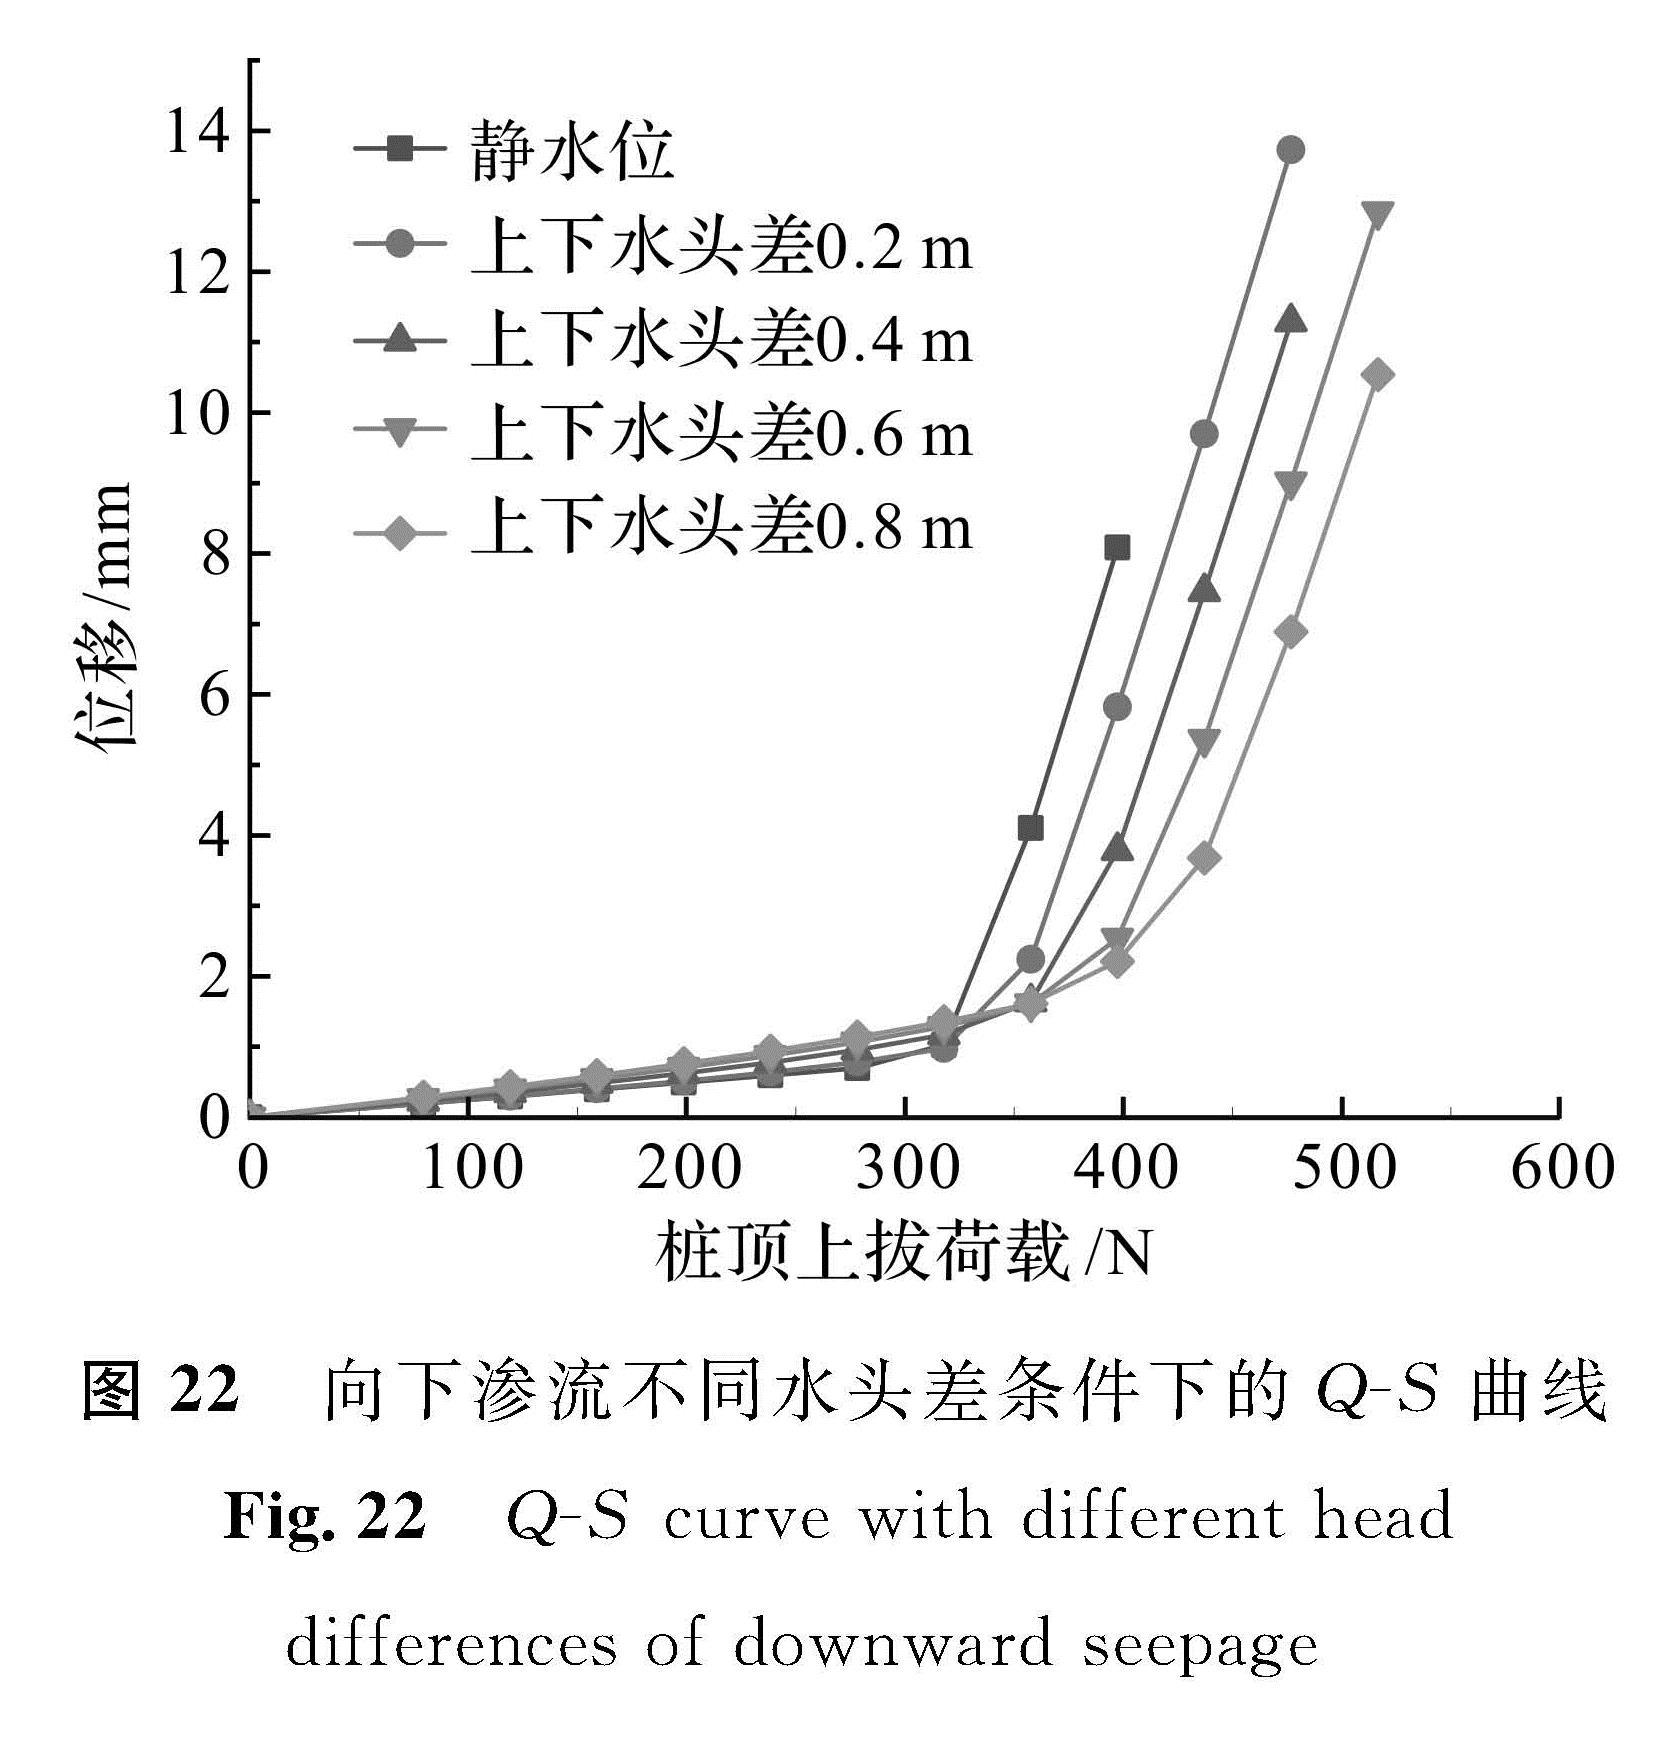 图 22 向下渗流不同水头差条件下的Q -S曲线<br/>Fig.22 Q -S curve with different head differences of downward seepage